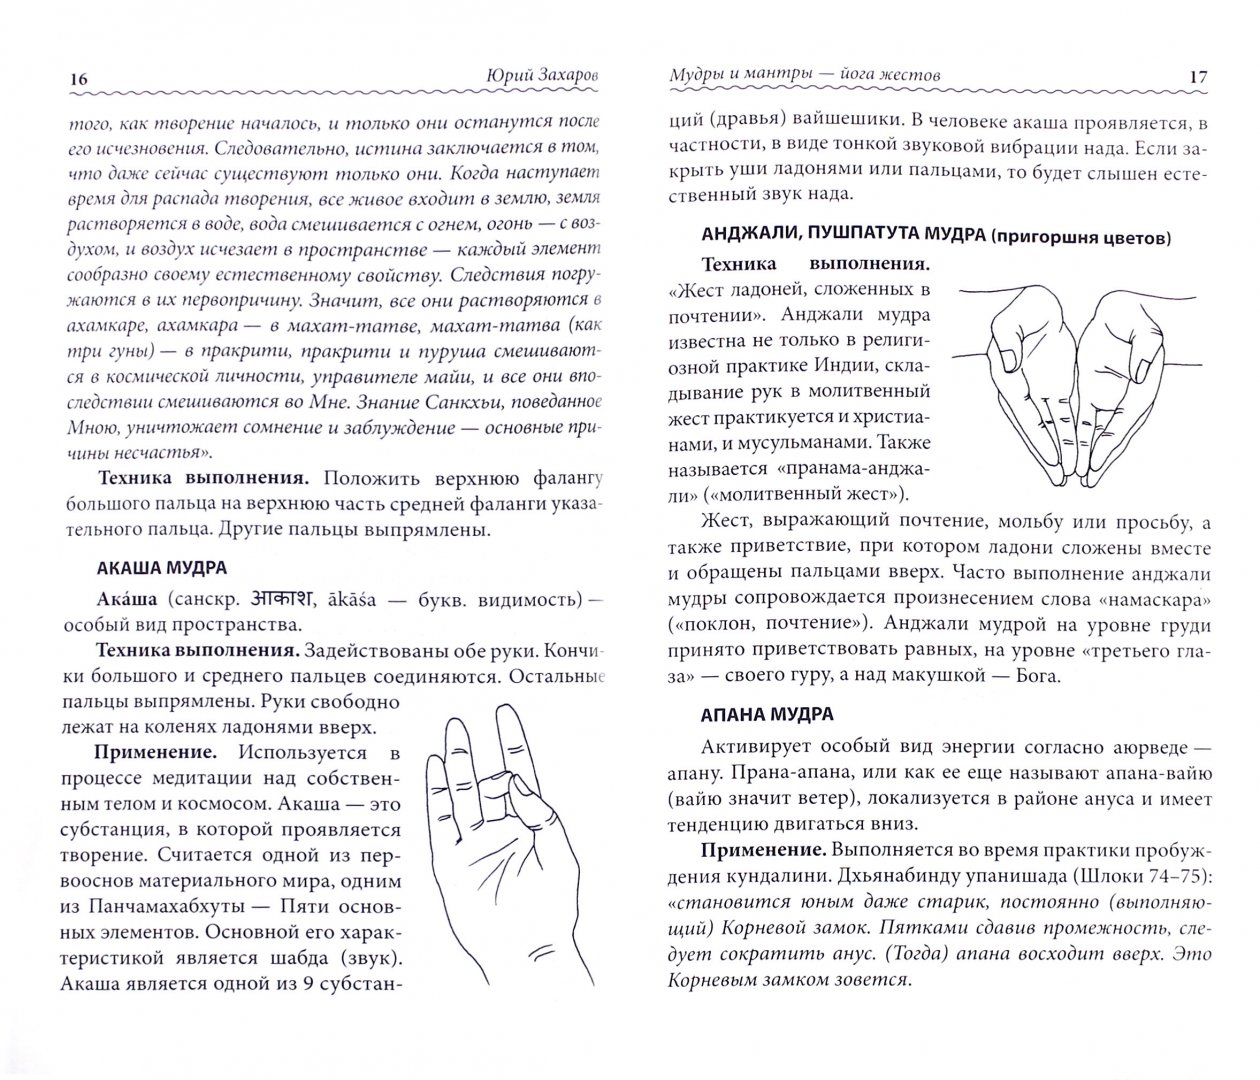 Иллюстрация 1 из 7 для Мудры и мантры - йога жестов - Юрий Захаров | Лабиринт - книги. Источник: Лабиринт